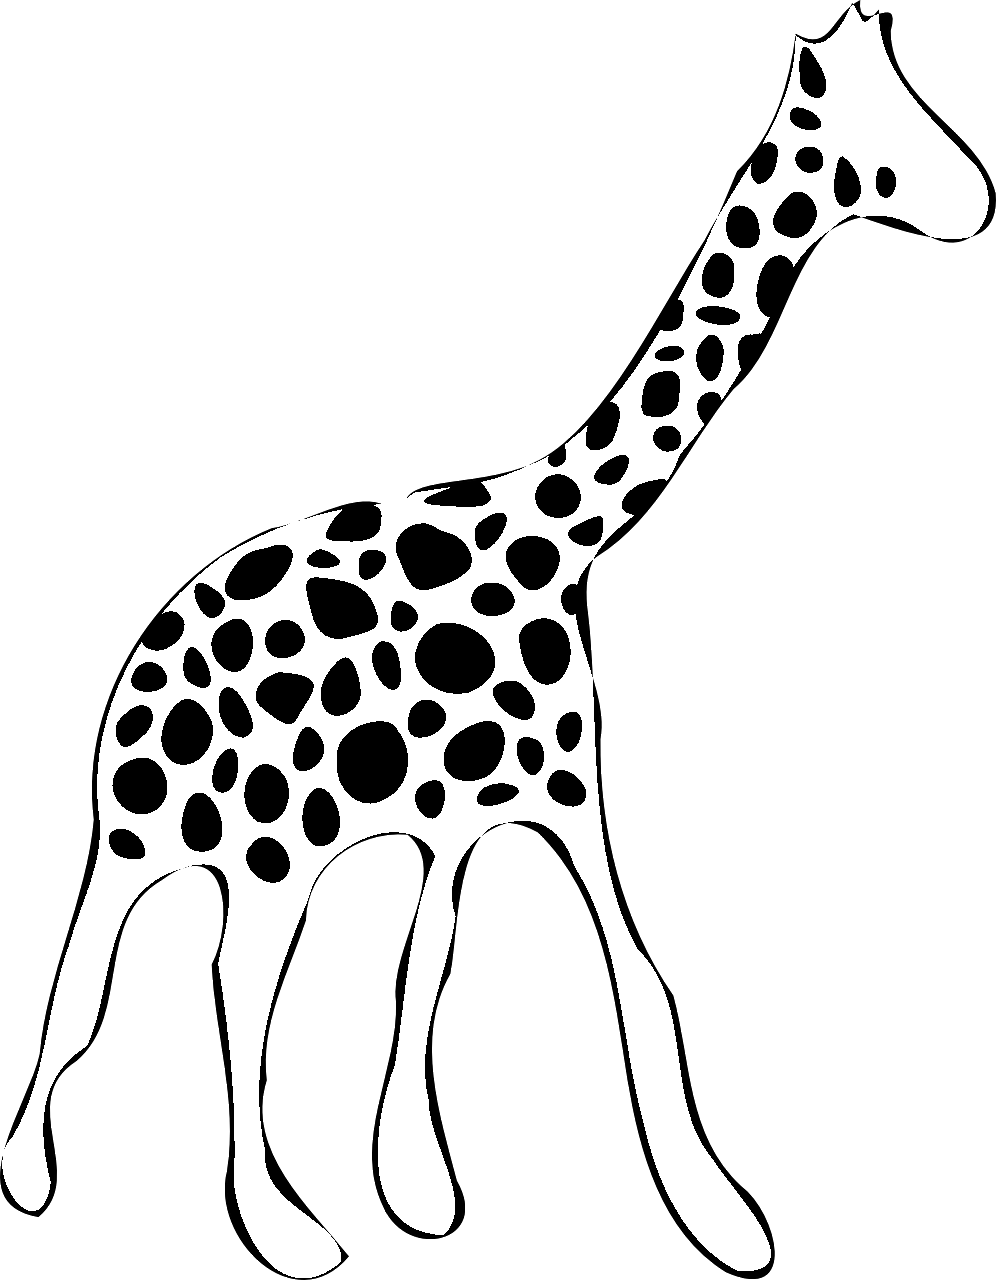 Página para colorear de jirafa estilizada de perfil